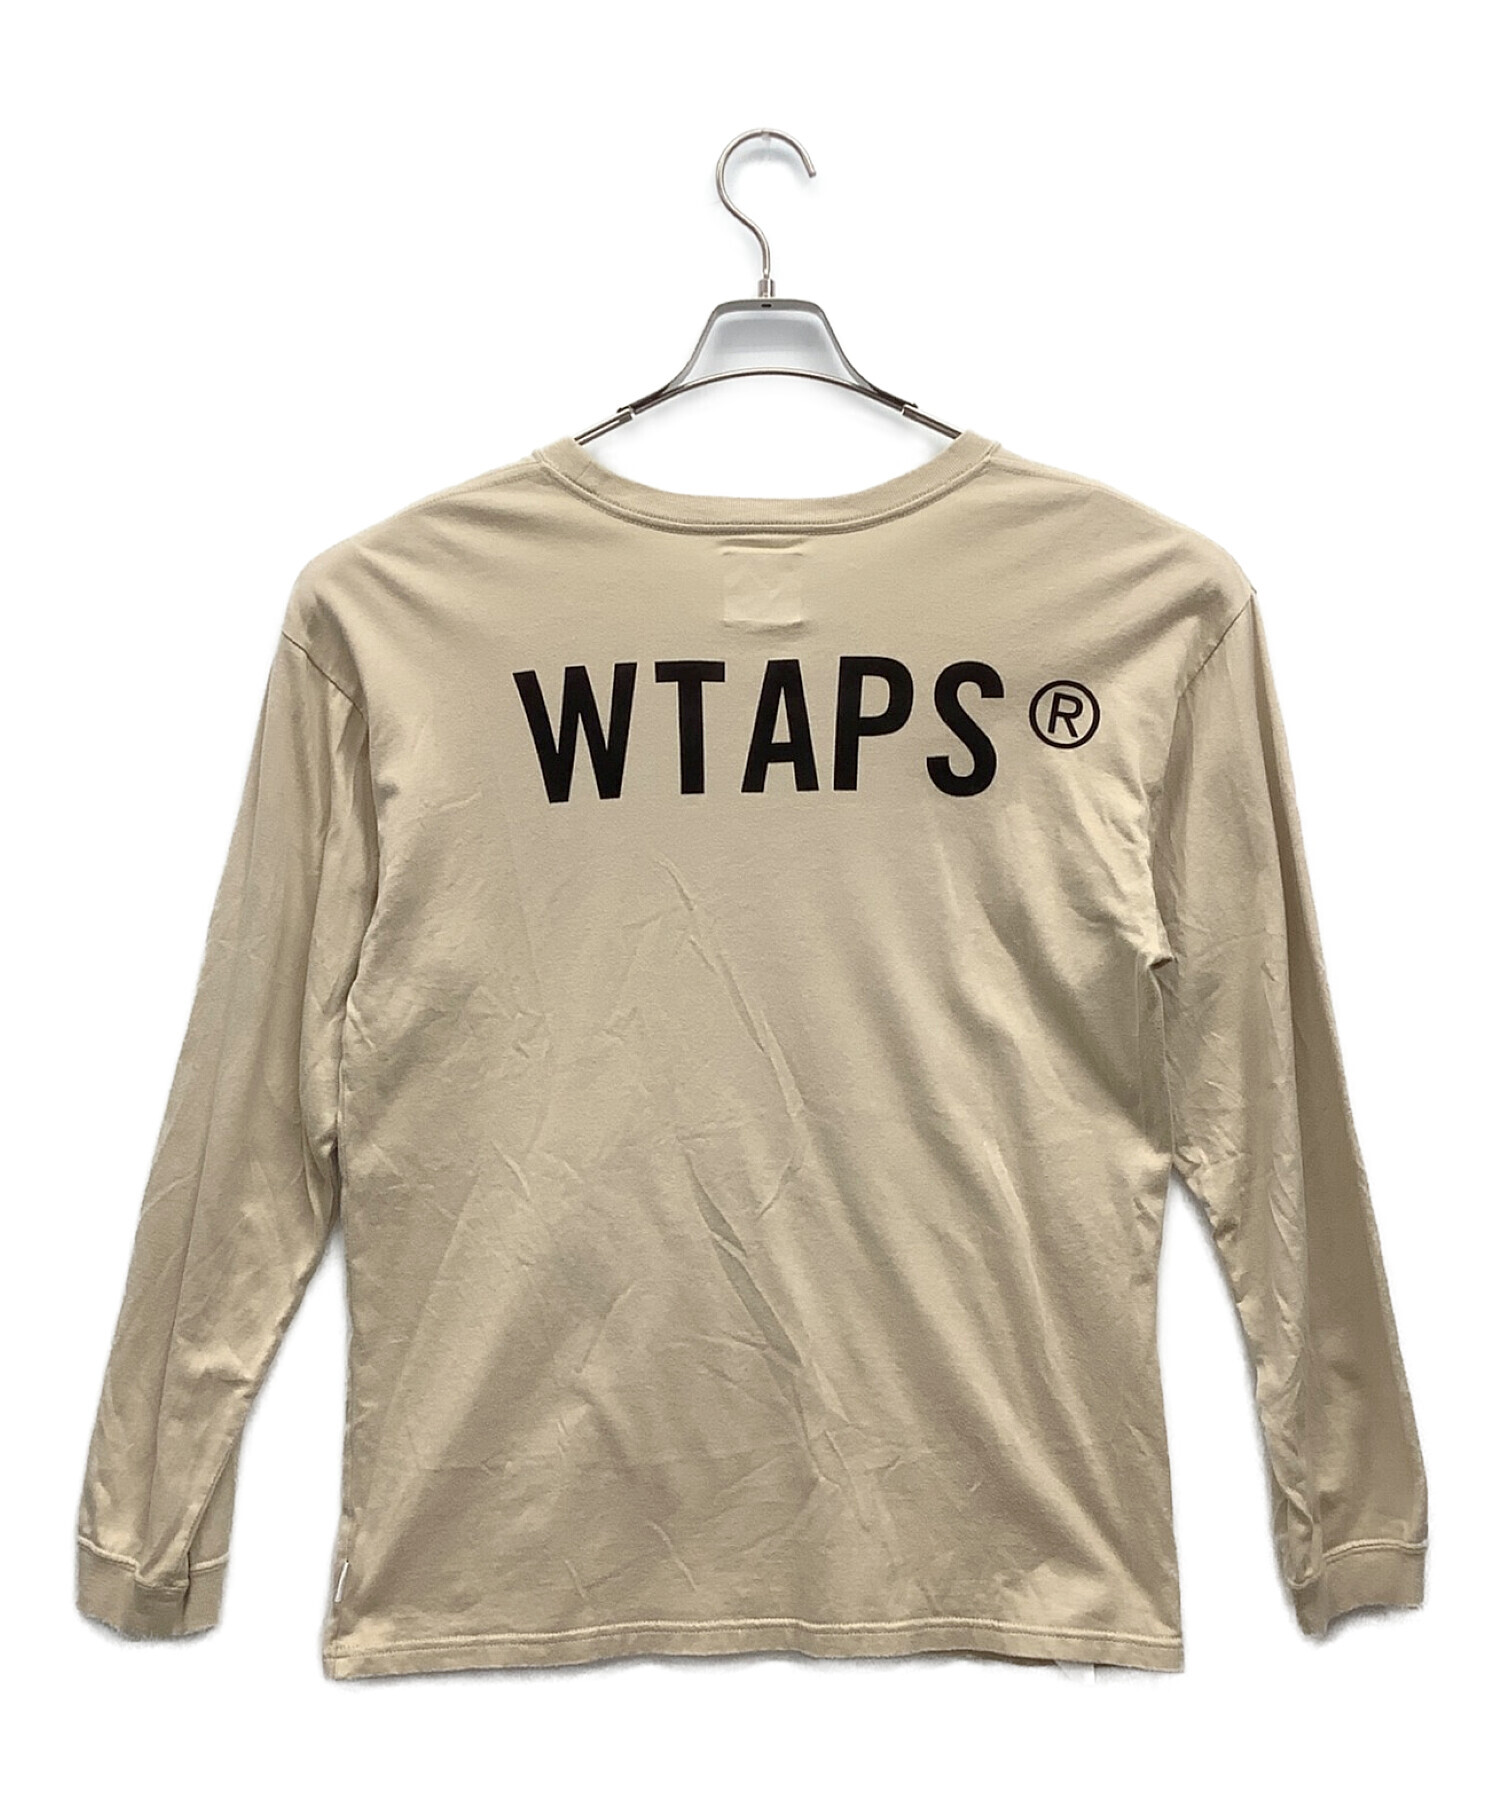 中古・古着通販】WTAPS (ダブルタップス) 長袖Tシャツ ベージュ サイズ